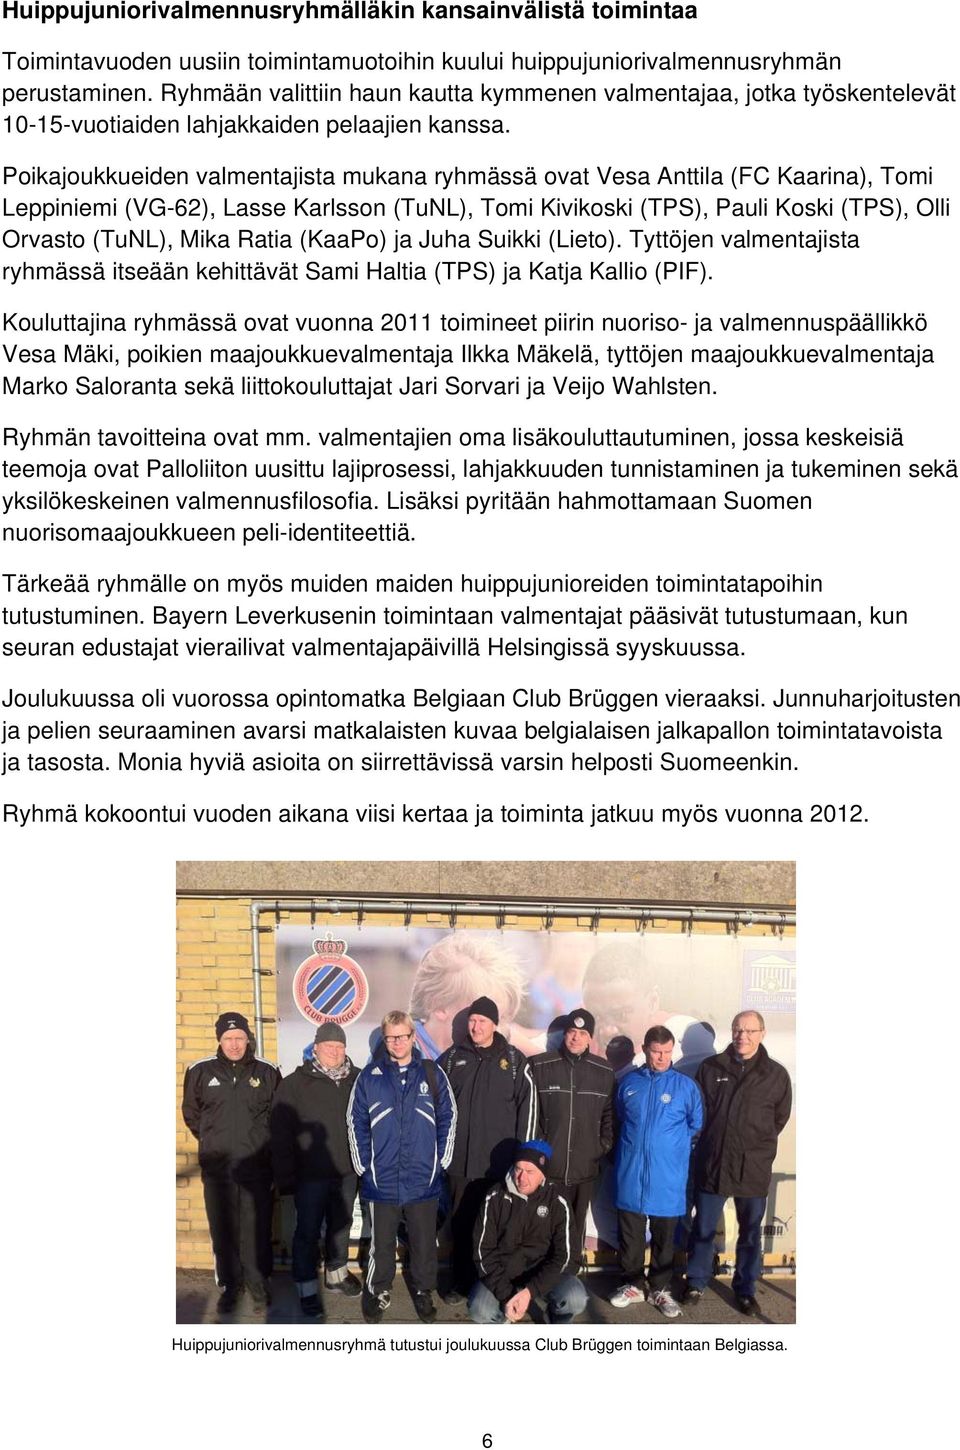 Poikajoukkueiden valmentajista mukana ryhmässä ovat Vesa Anttila (FC Kaarina), Tomi Leppiniemi (VG-62), Lasse Karlsson (TuNL), Tomi Kivikoski (TPS), Pauli Koski (TPS), Olli Orvasto (TuNL), Mika Ratia